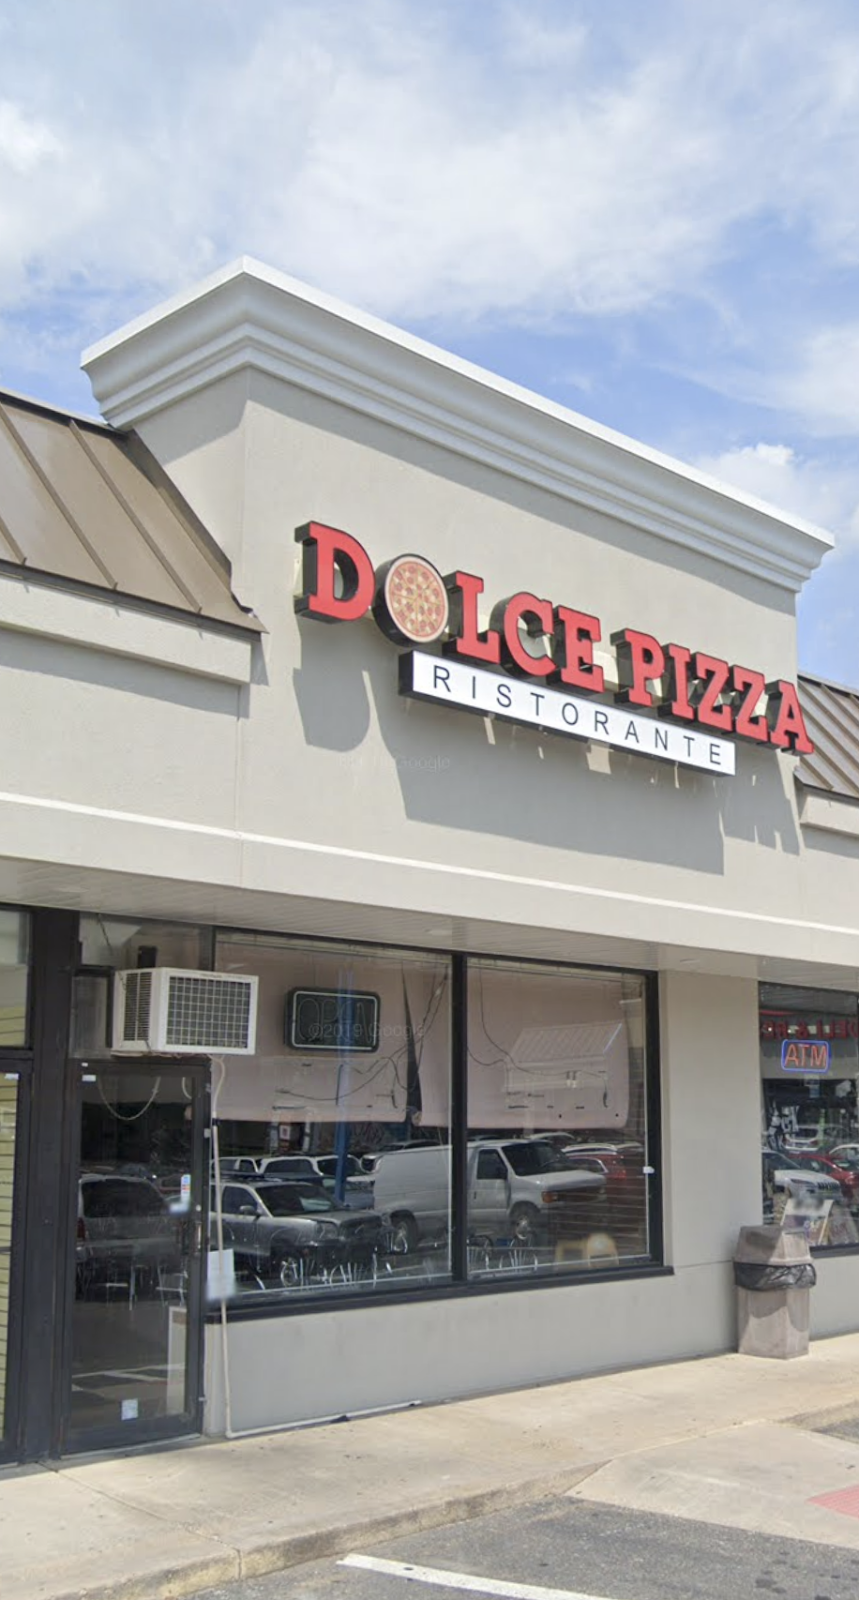 Dolce Pizza Ristorante | 1619 Grant Ave, Philadelphia, PA 19115 | Phone: (215) 856-3652